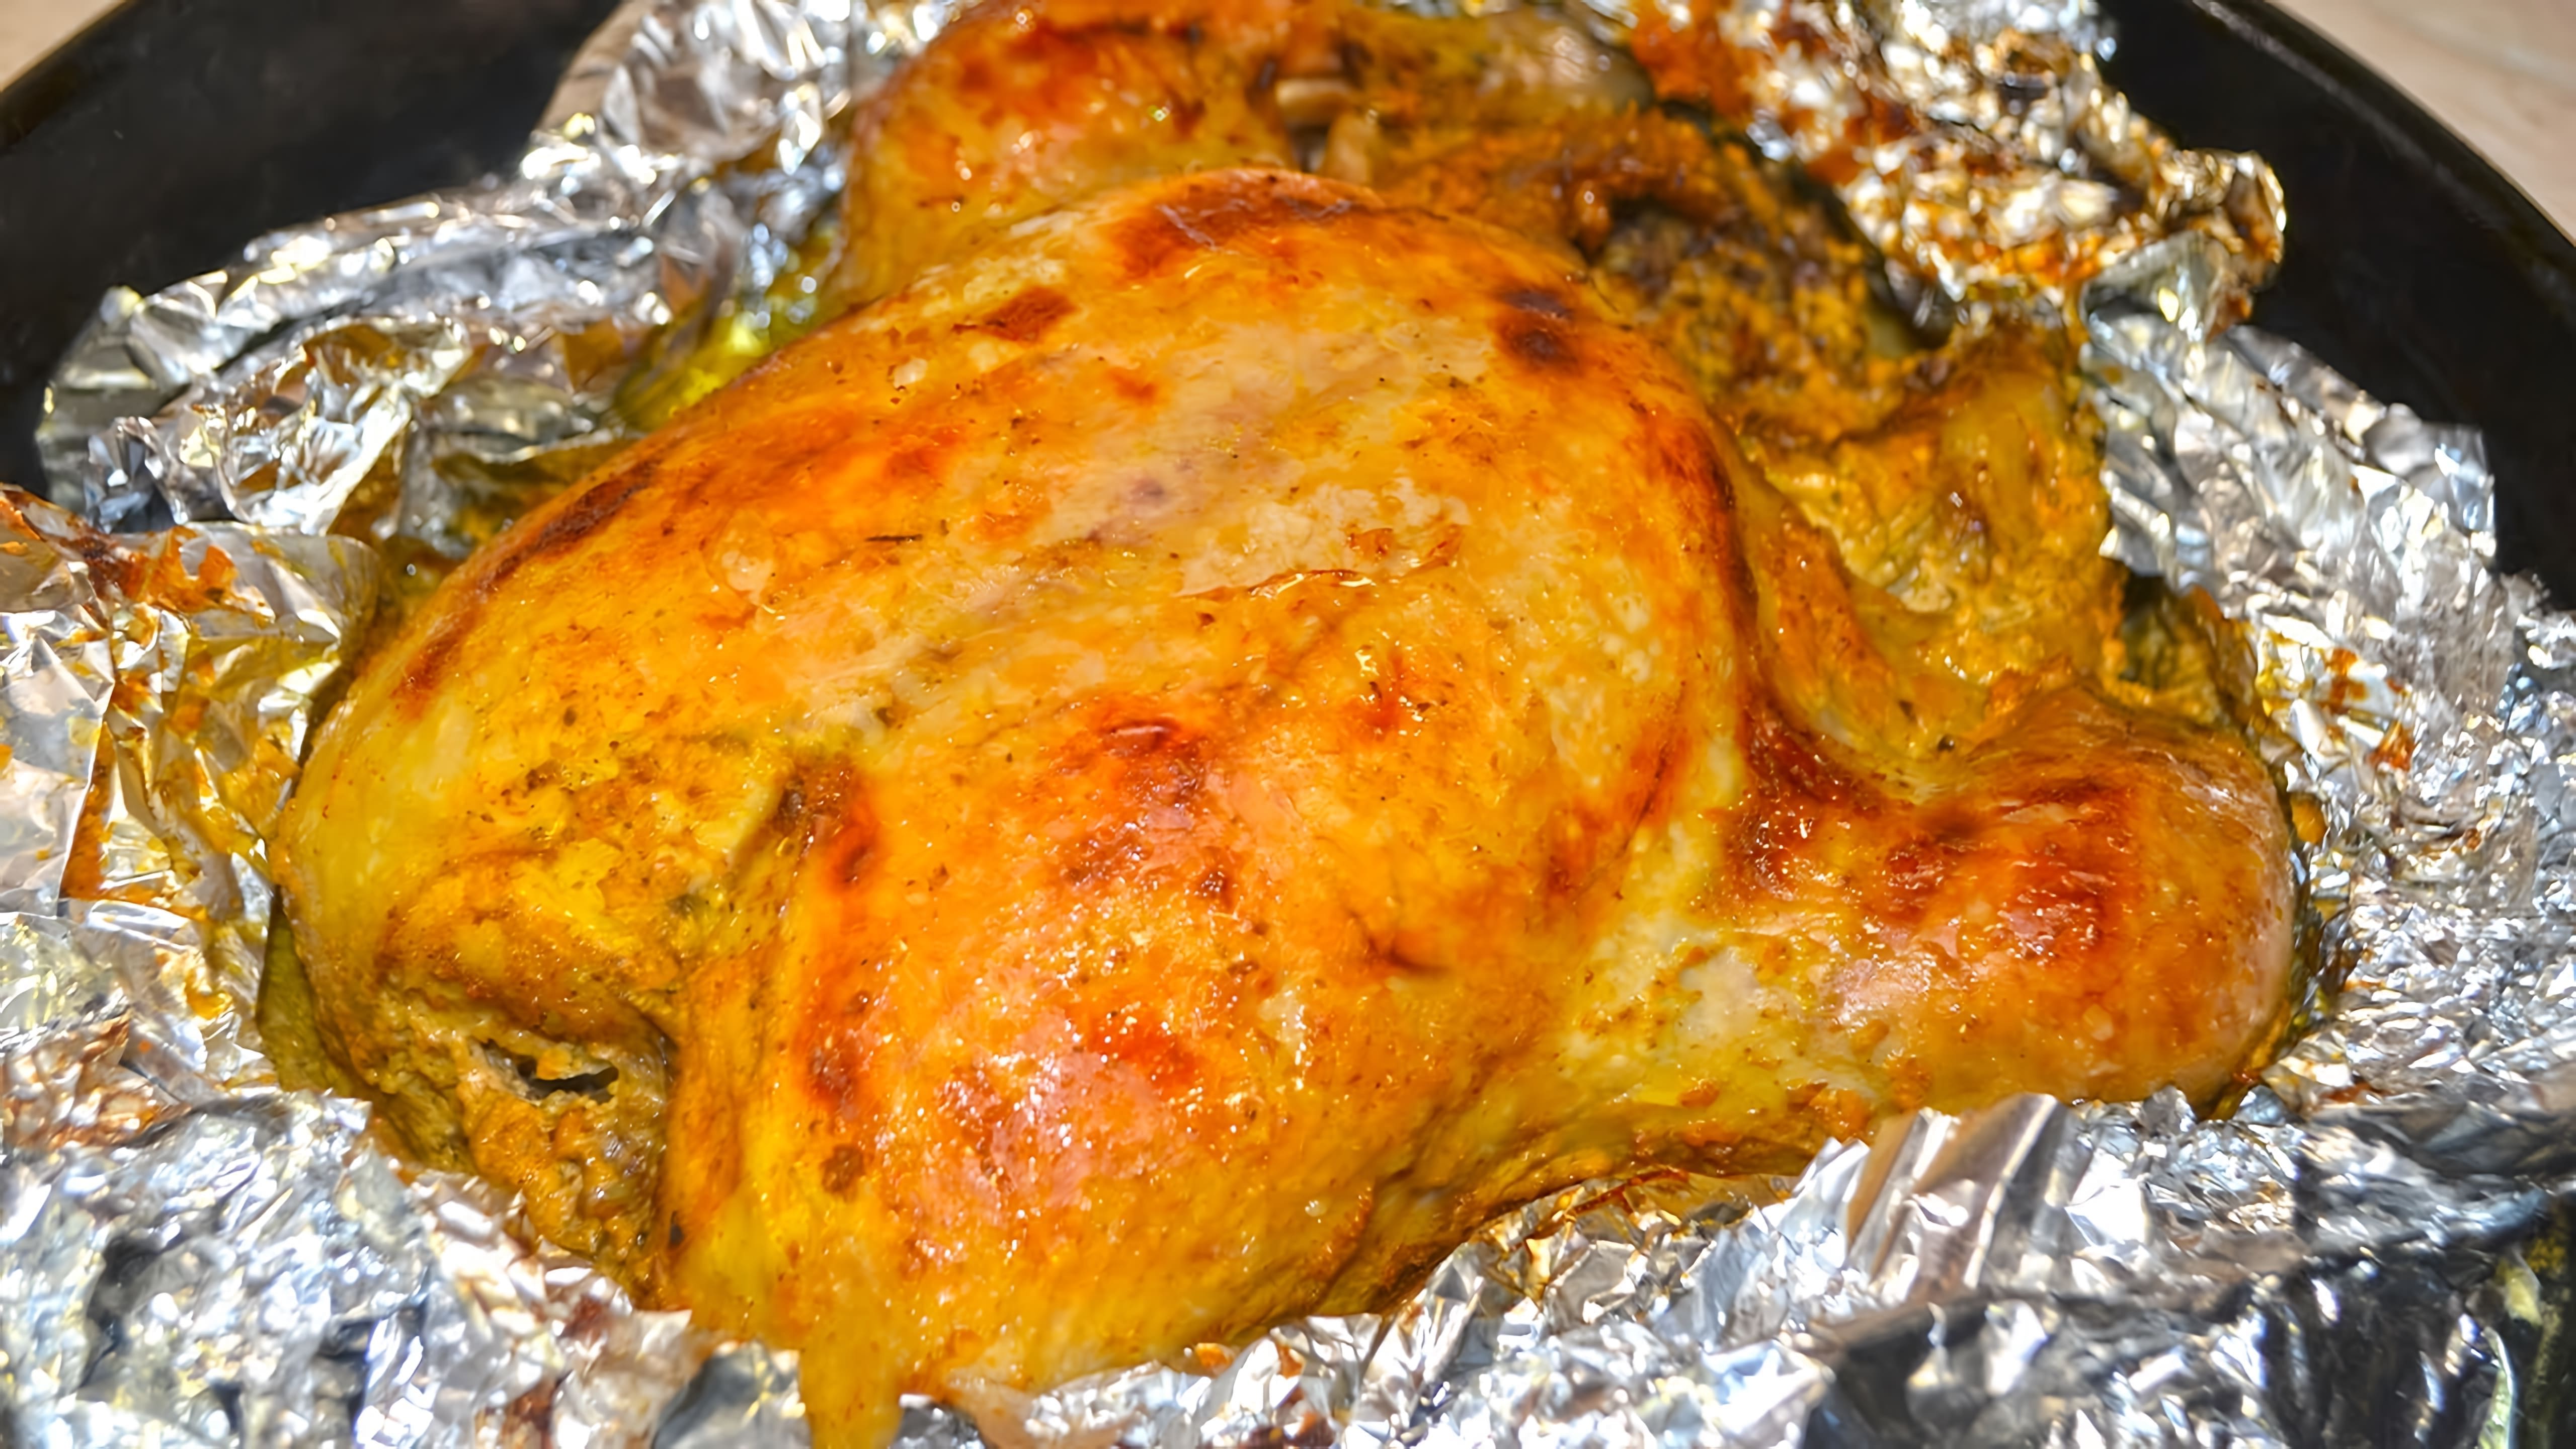 В данном видео демонстрируется рецепт приготовления курицы в духовке целиком